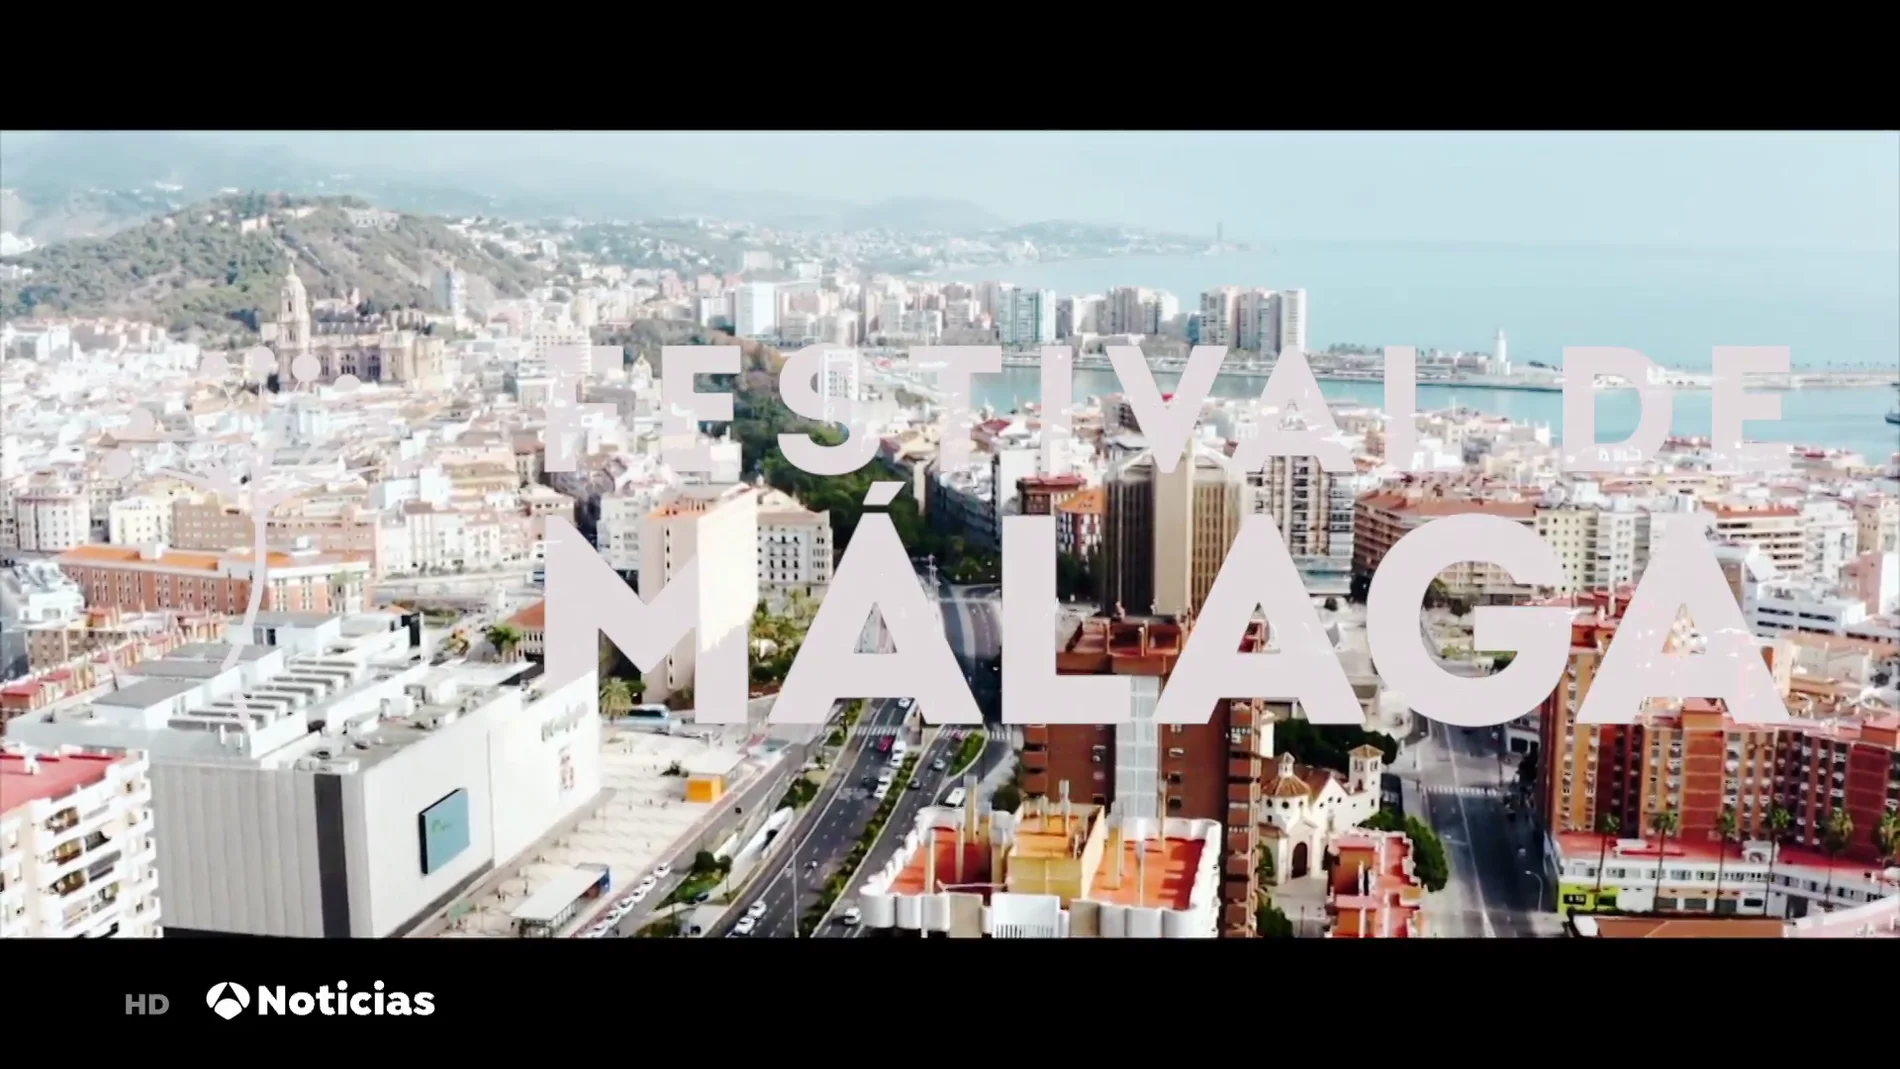 La ciudad de Málaga y su Festival de Cine, una alianza cultural cada vez más conocida